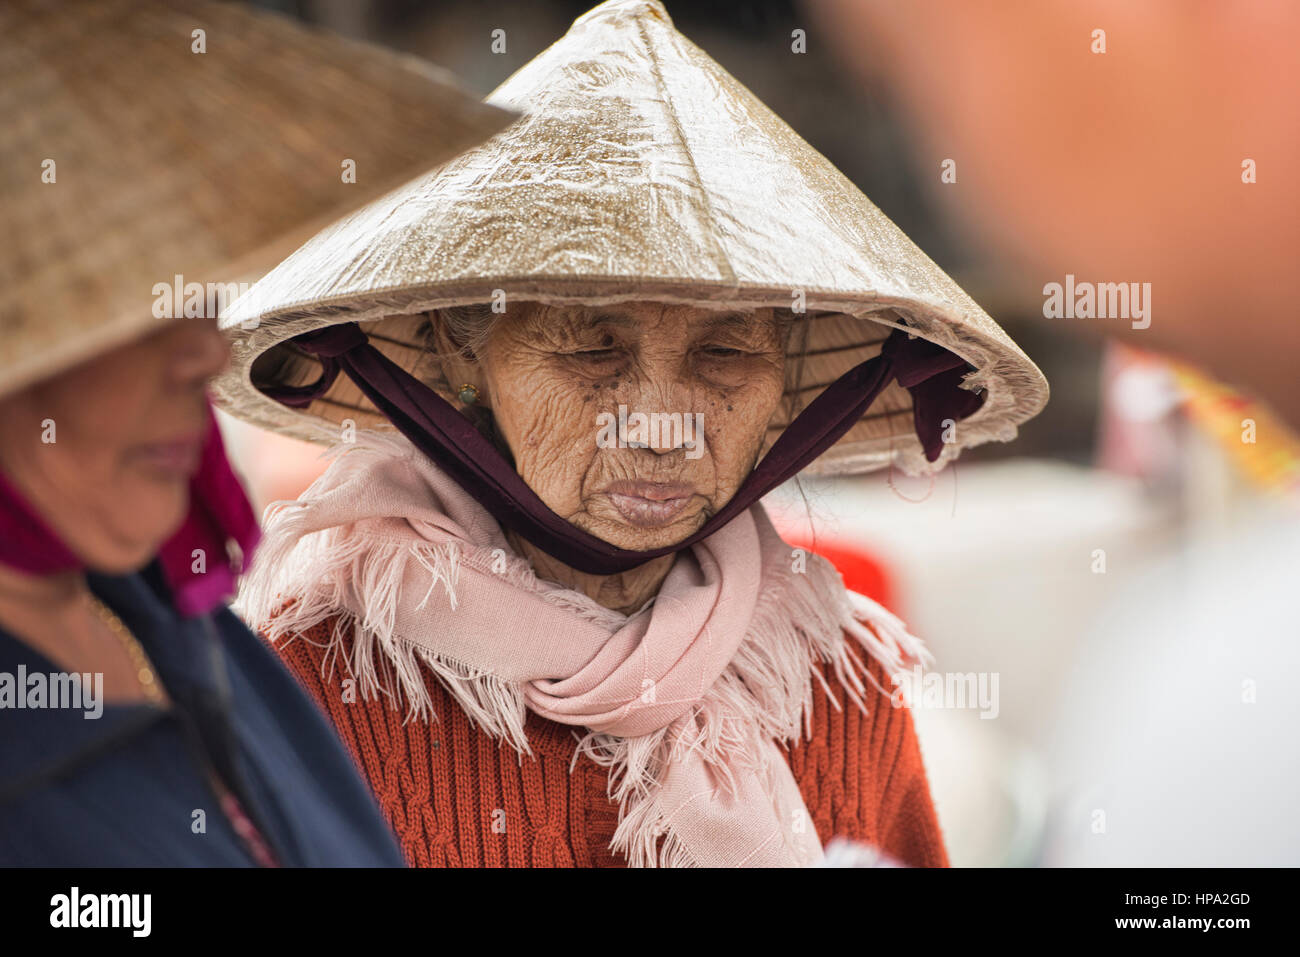 Portrait of an old vendor, Hoi An, Vietnam Stock Photo